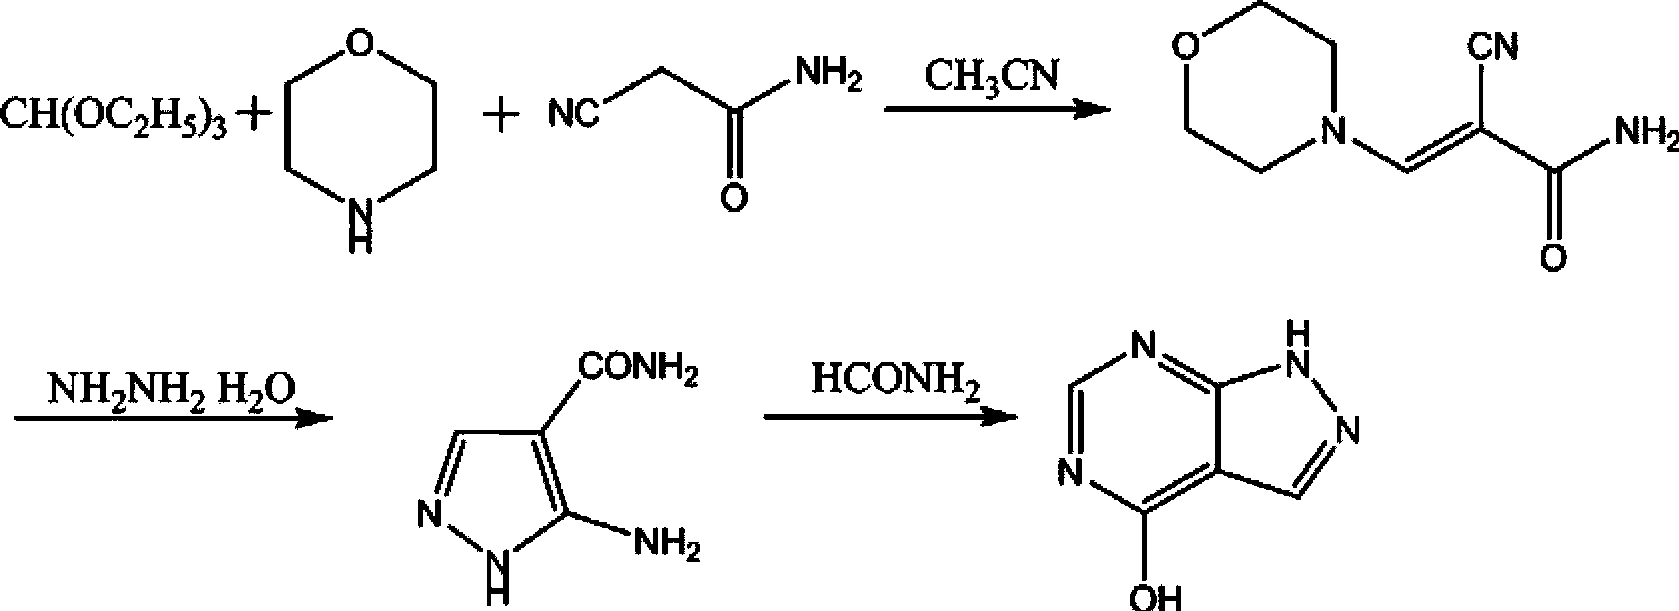 Purification method of allopurinol